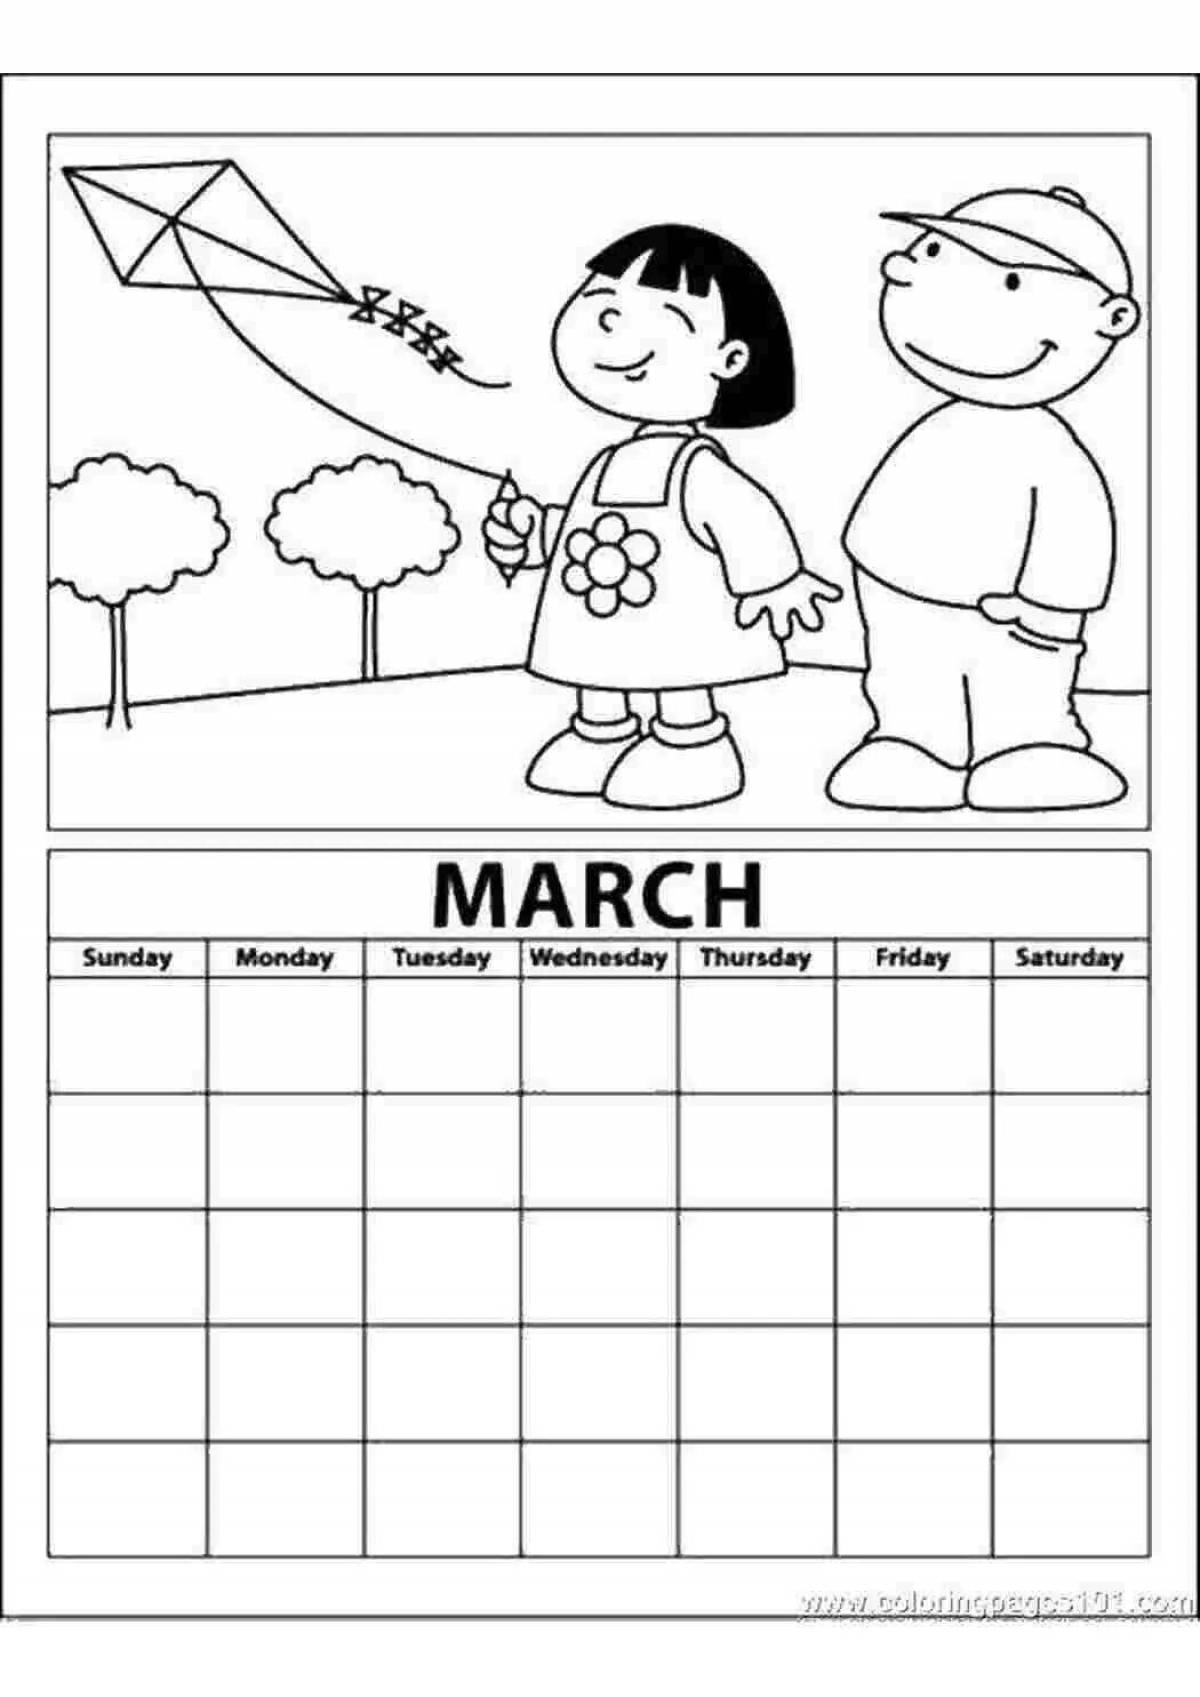 Children's calendar #1